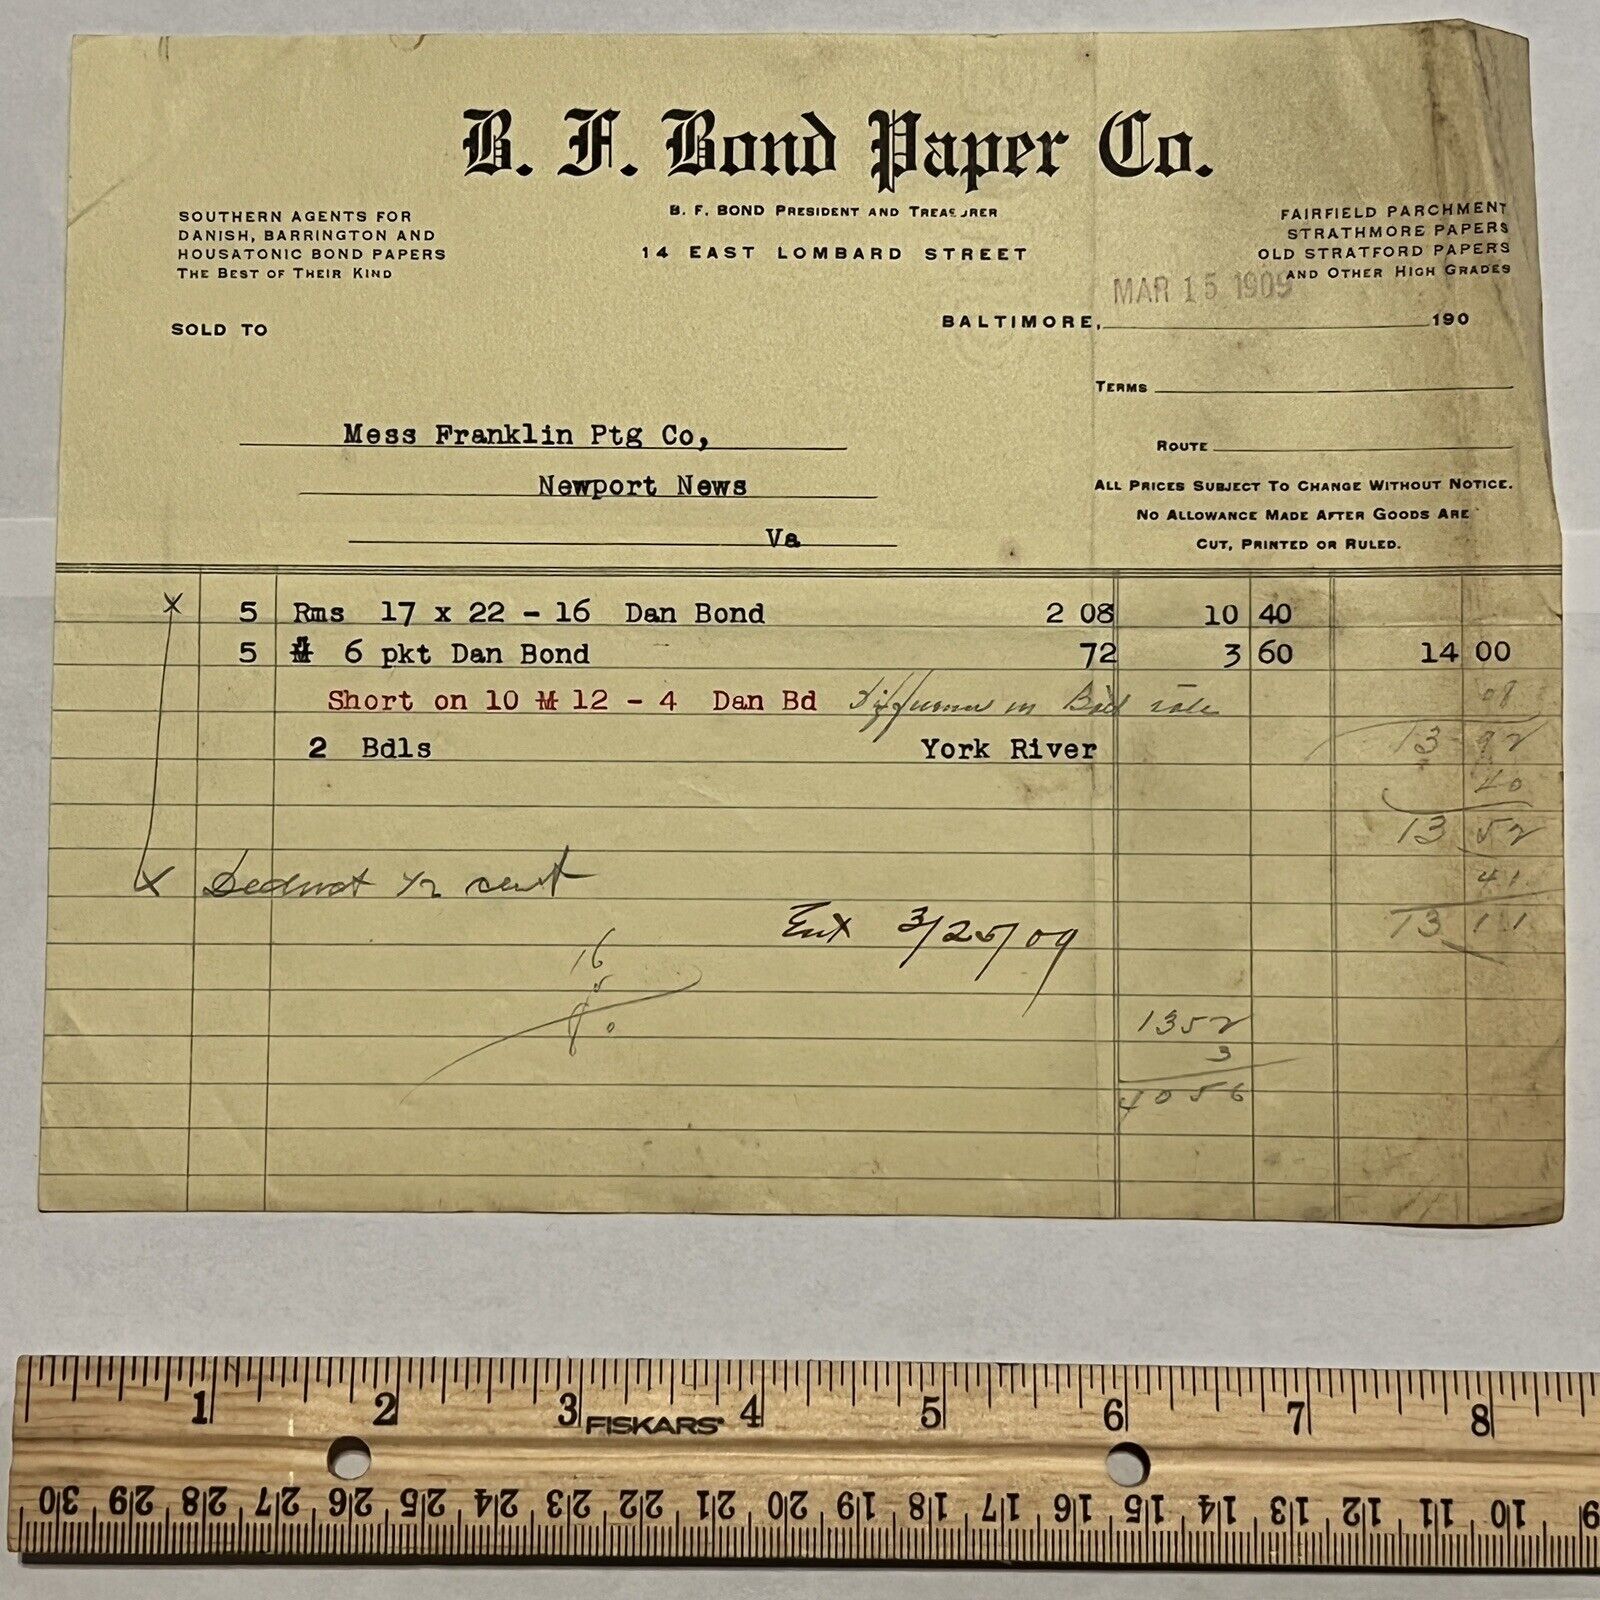 1909 B.F. BOND PAPER COMPANY INVOICE RECEIPT E. LOMBARD STREET BALTIMORE, MD